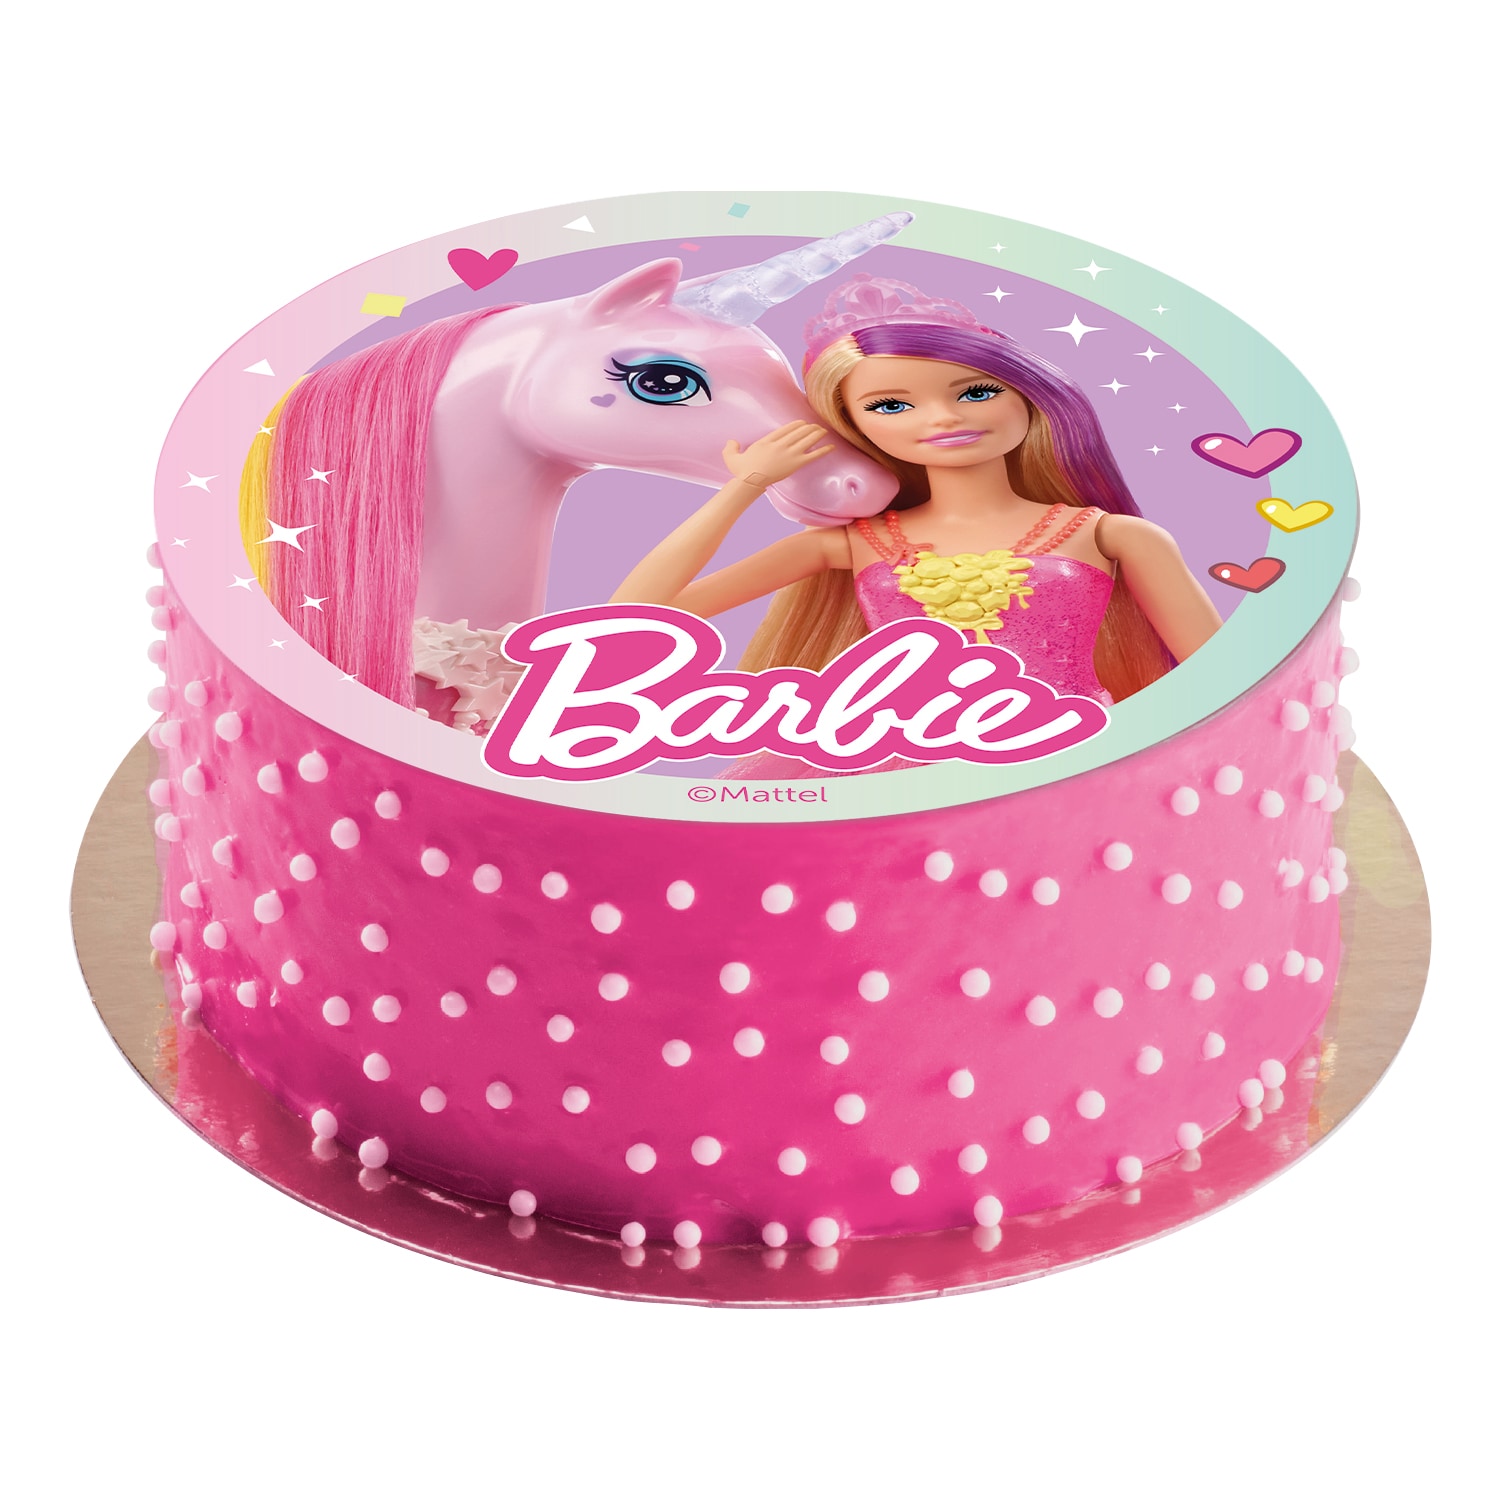 Tårtbild Barbie - Oblat 20 cm